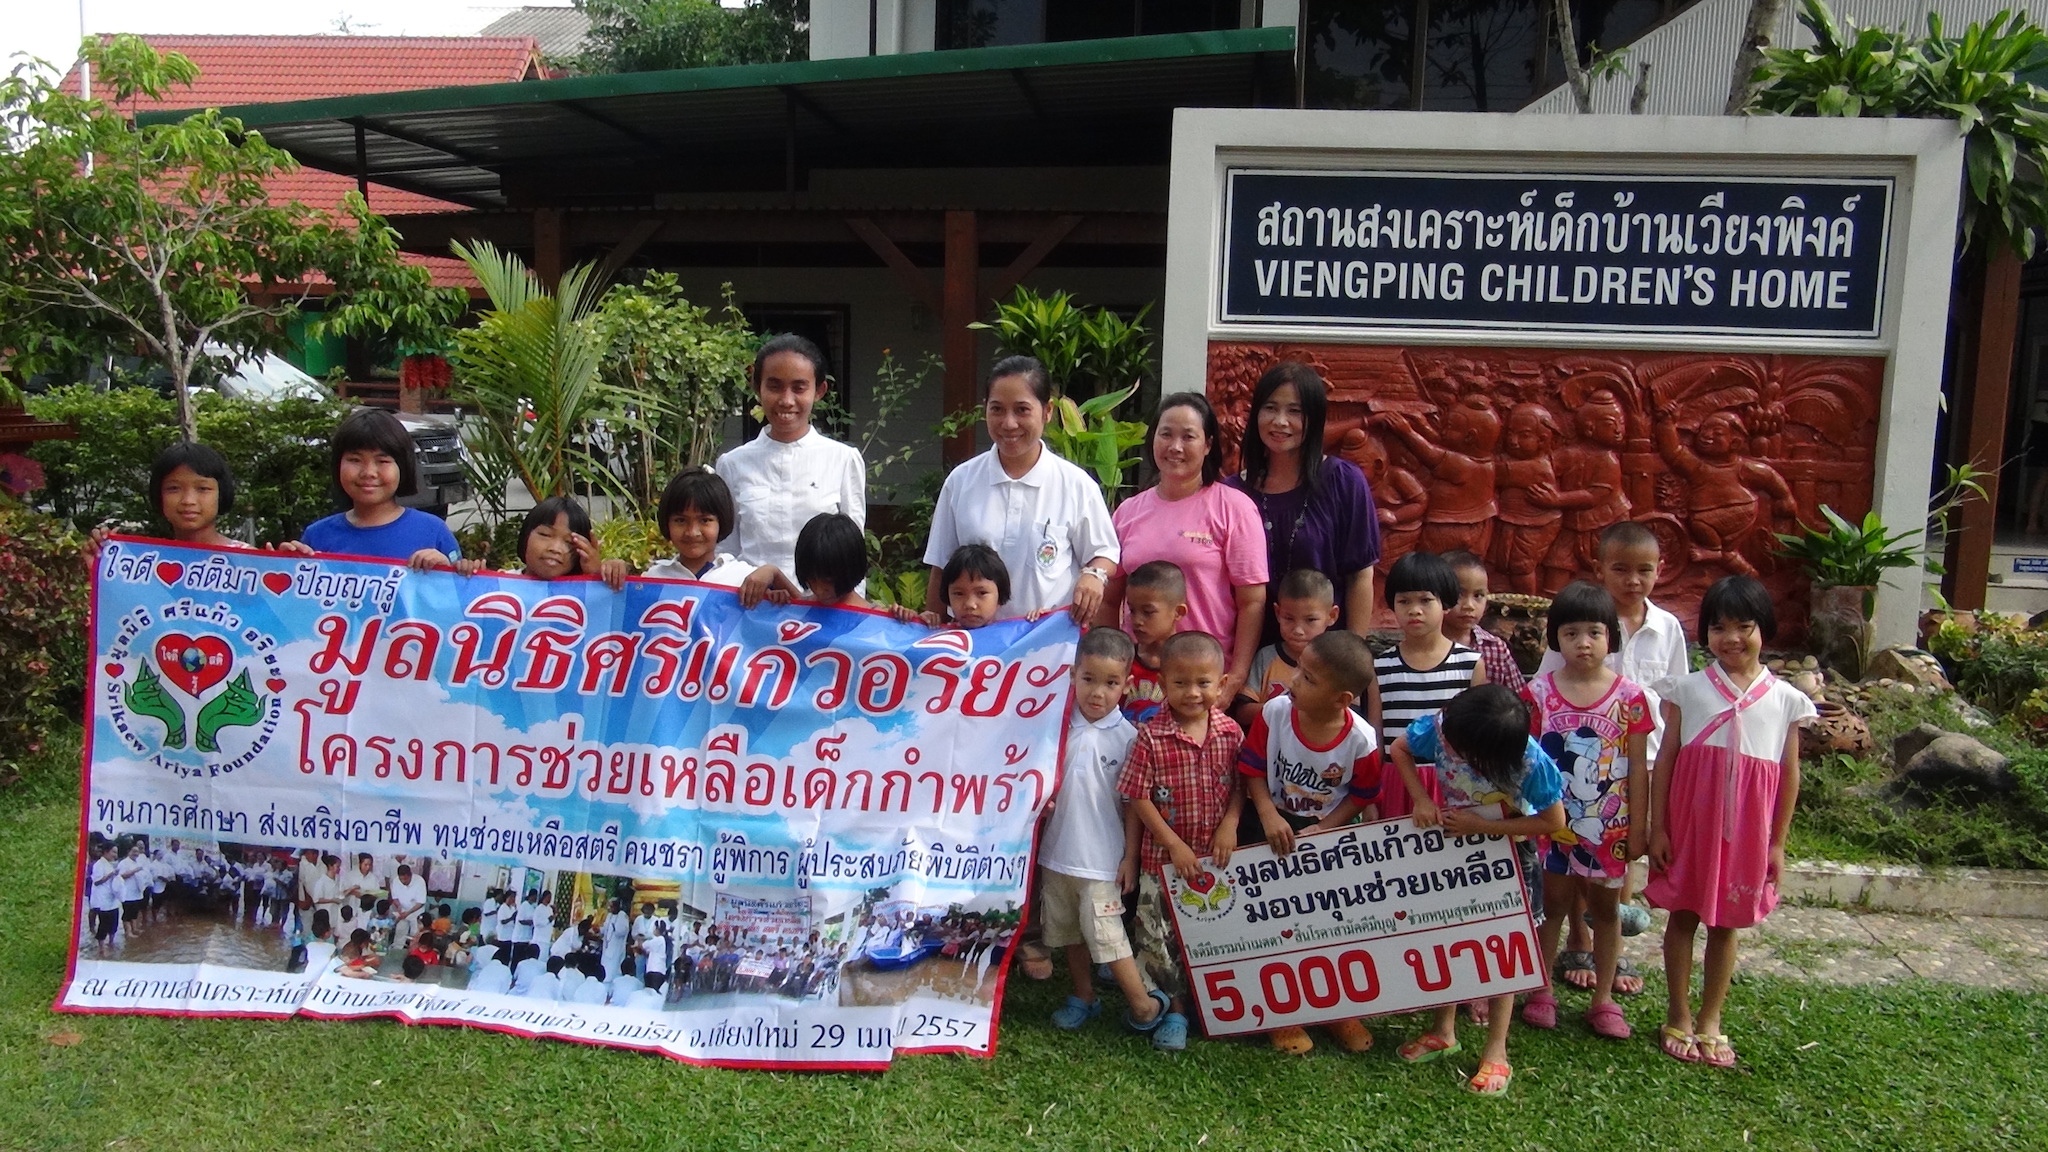 โครงการมอบทุนช่วยเหลือเด็กกำพร้า วันที่ 29 เมษายน 2557   ณ สถานสงเคราะห์เด็กบ้านเวียงพิงค์ อ.แม่ริม จ.เชียงใหม่